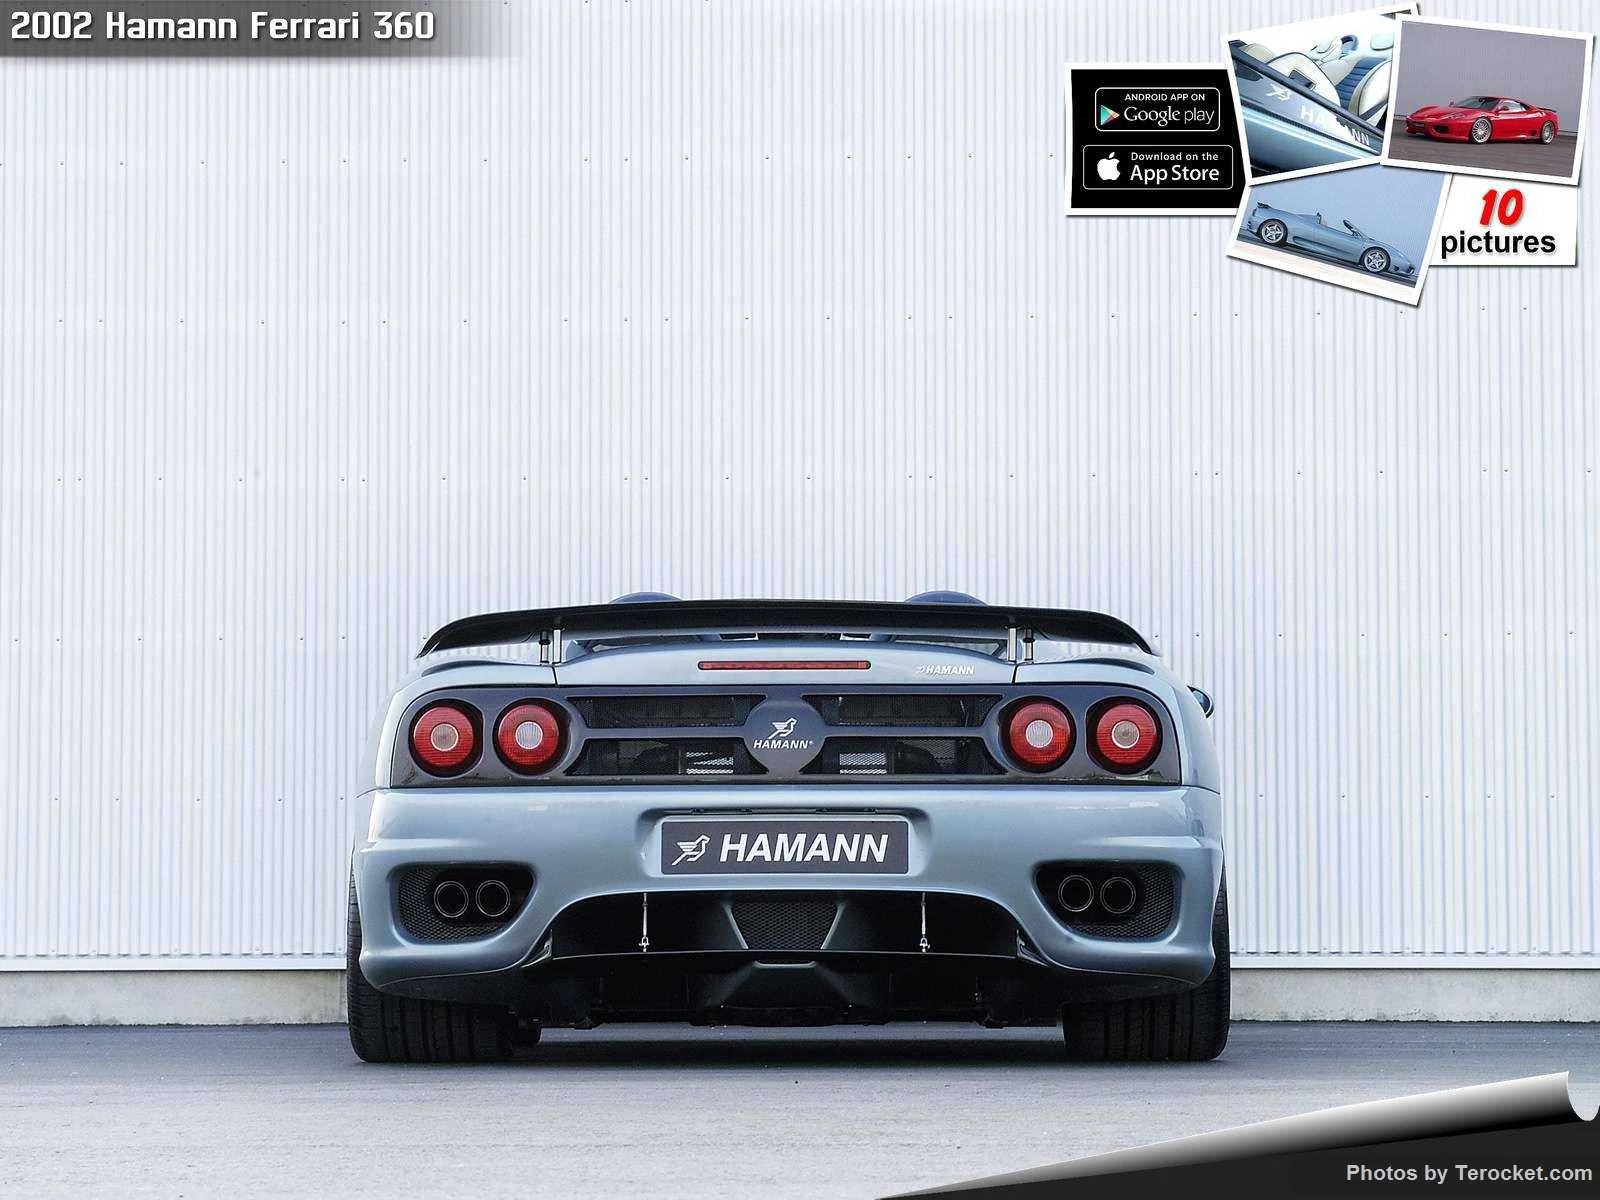 Hình ảnh xe ô tô Hamann Ferrari 360 2002 & nội ngoại thất